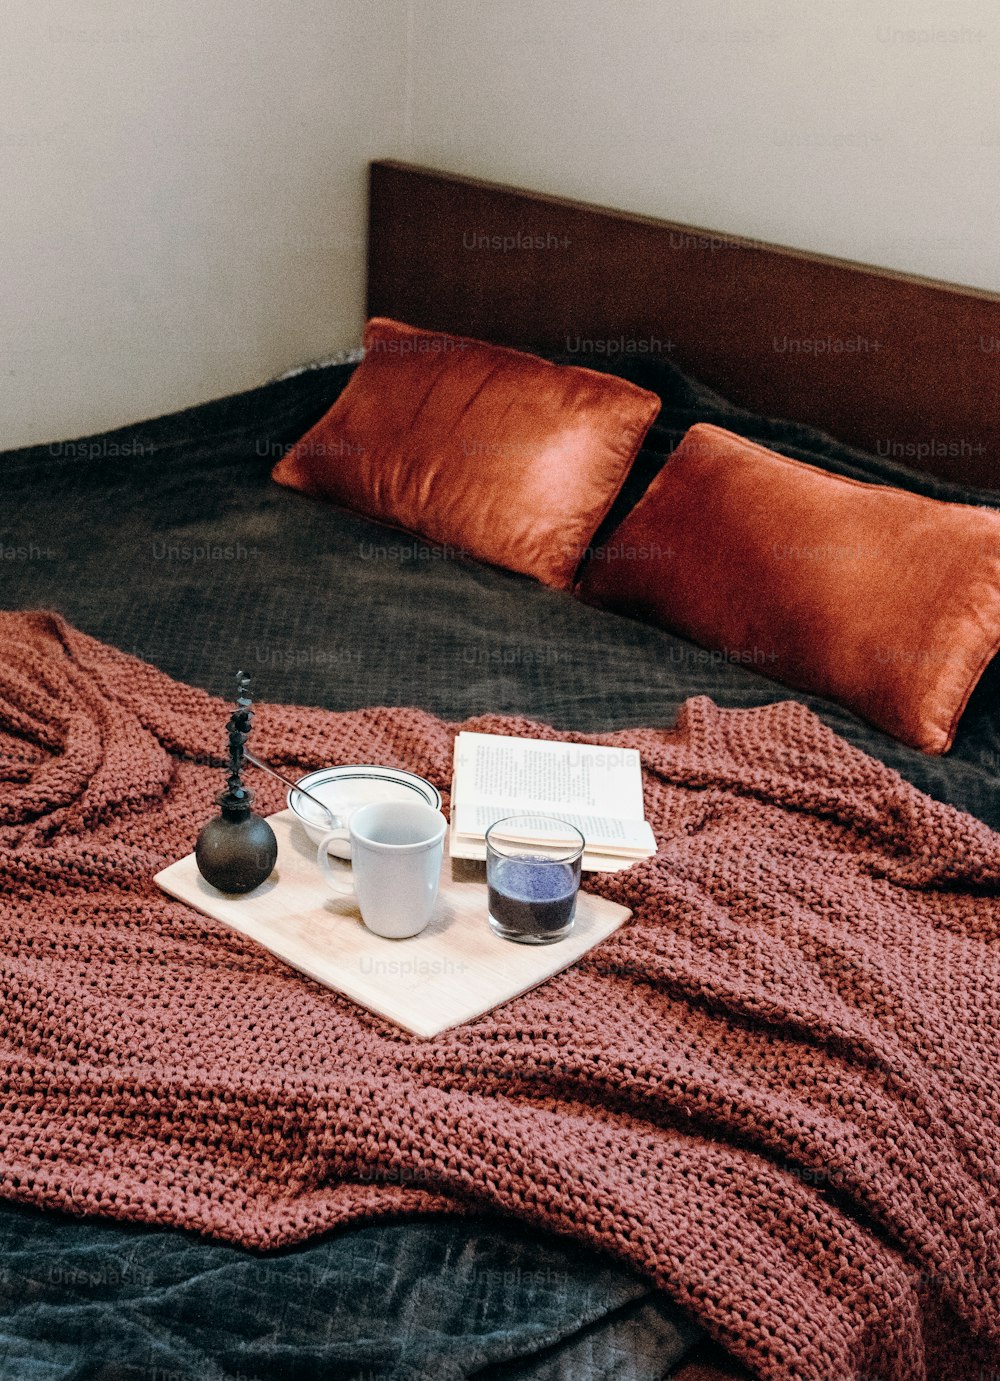 ein Bett mit einem Buch und zwei Tassen darauf